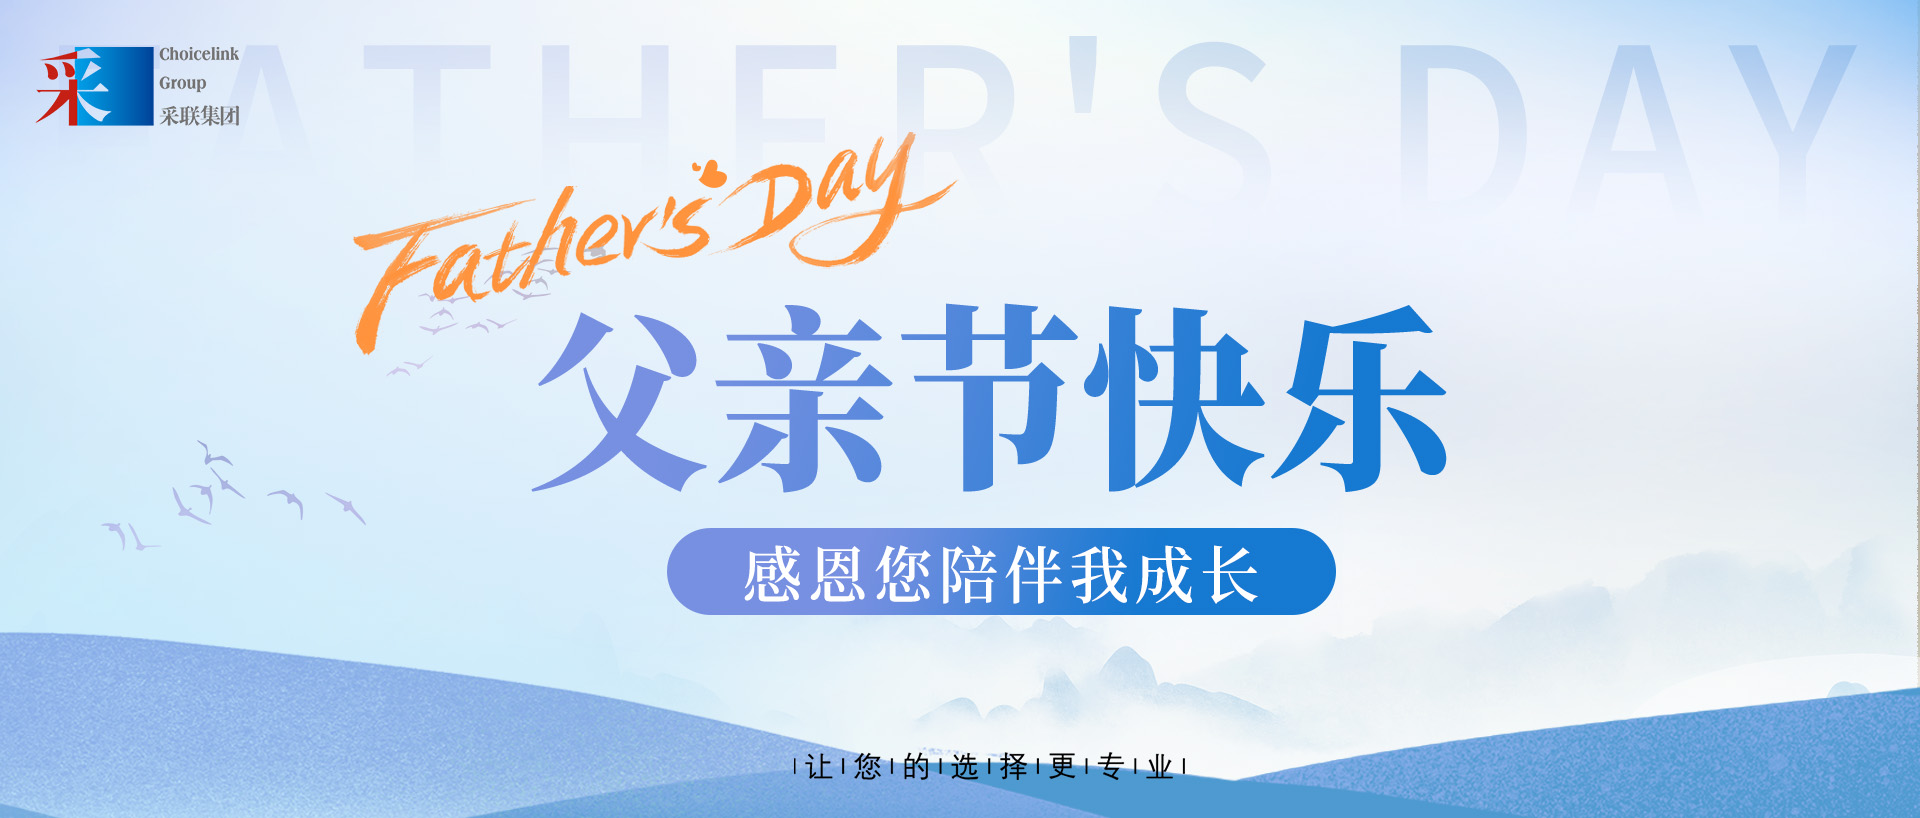 香港正挂挂牌正版图解祝伟大的父亲，节日快乐！